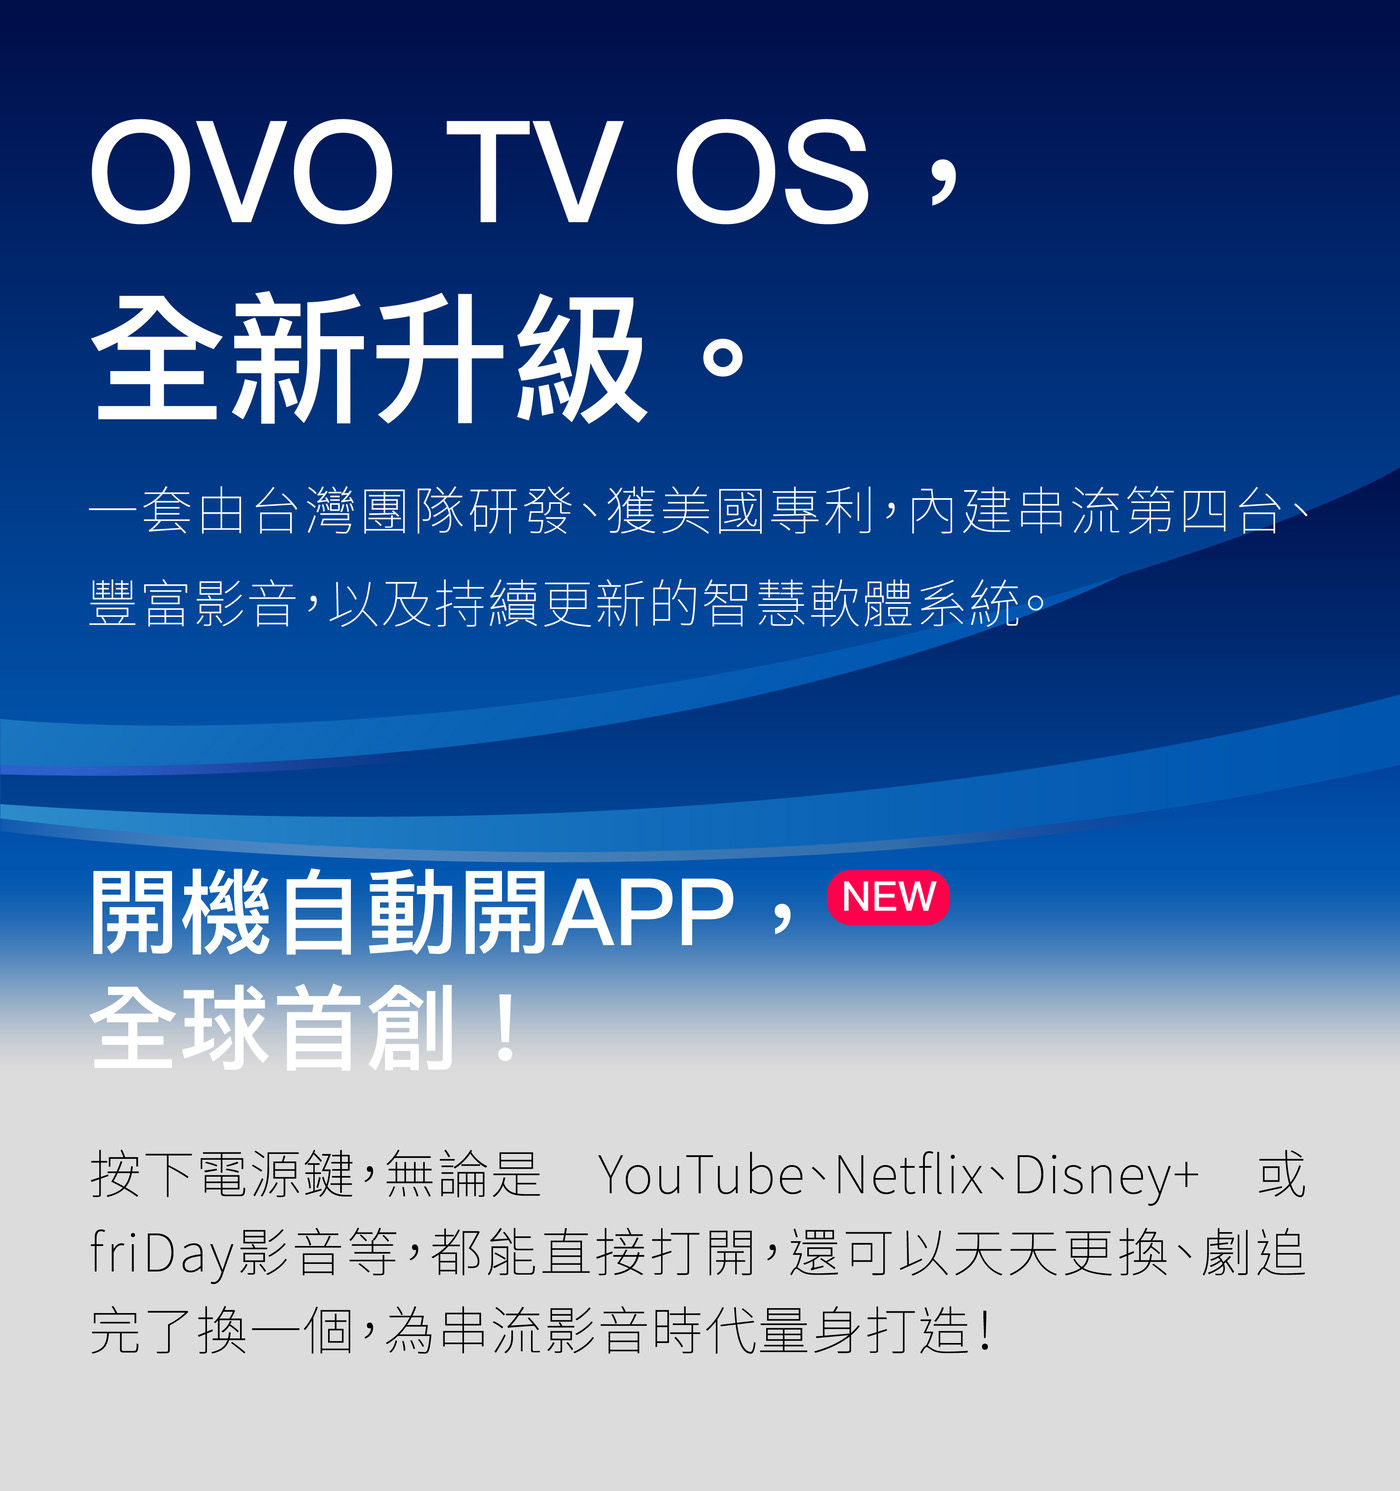 OVO 百吋無框電視 3D增強版 K3-E整合超高性能電視盒、高亮高畫質投影機、劇院級音效、好用 OVO TV OS，及豐富影音